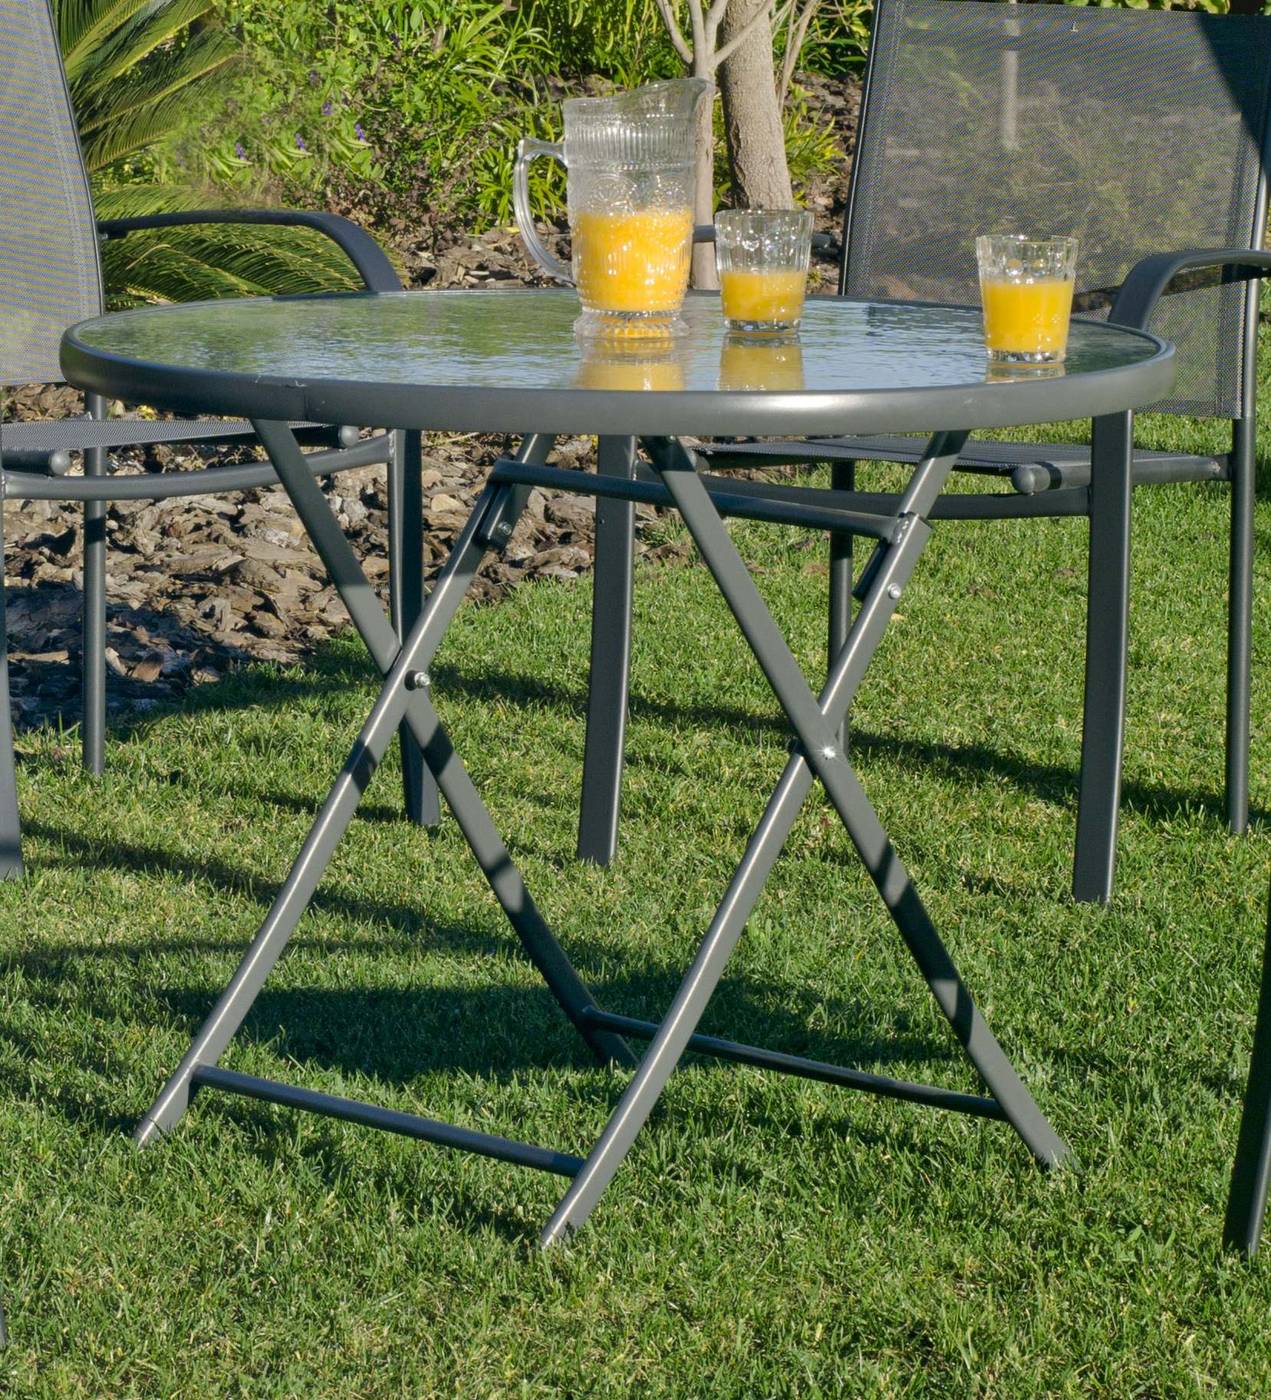 Set Acero Cordoba-Sulam 90-4 - Conjunto de acero color antracita: mesa redonda de 90 cm. con tapa de cristal templado + 4 sillones de acero y textilen